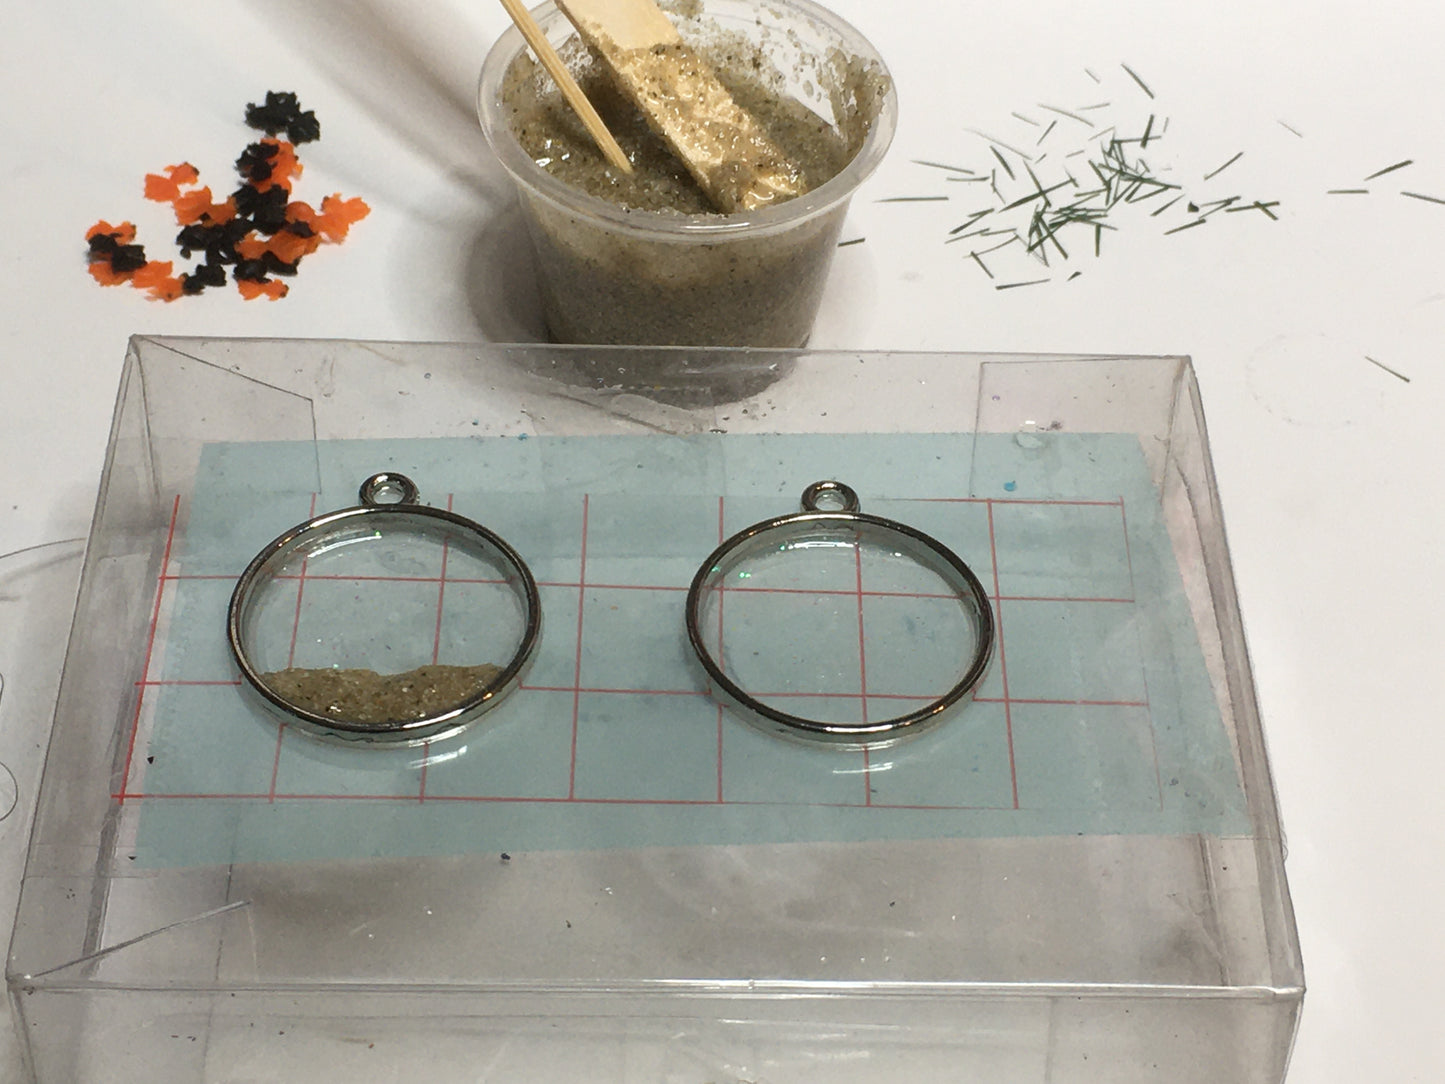 Goldfish Necklace Pendant